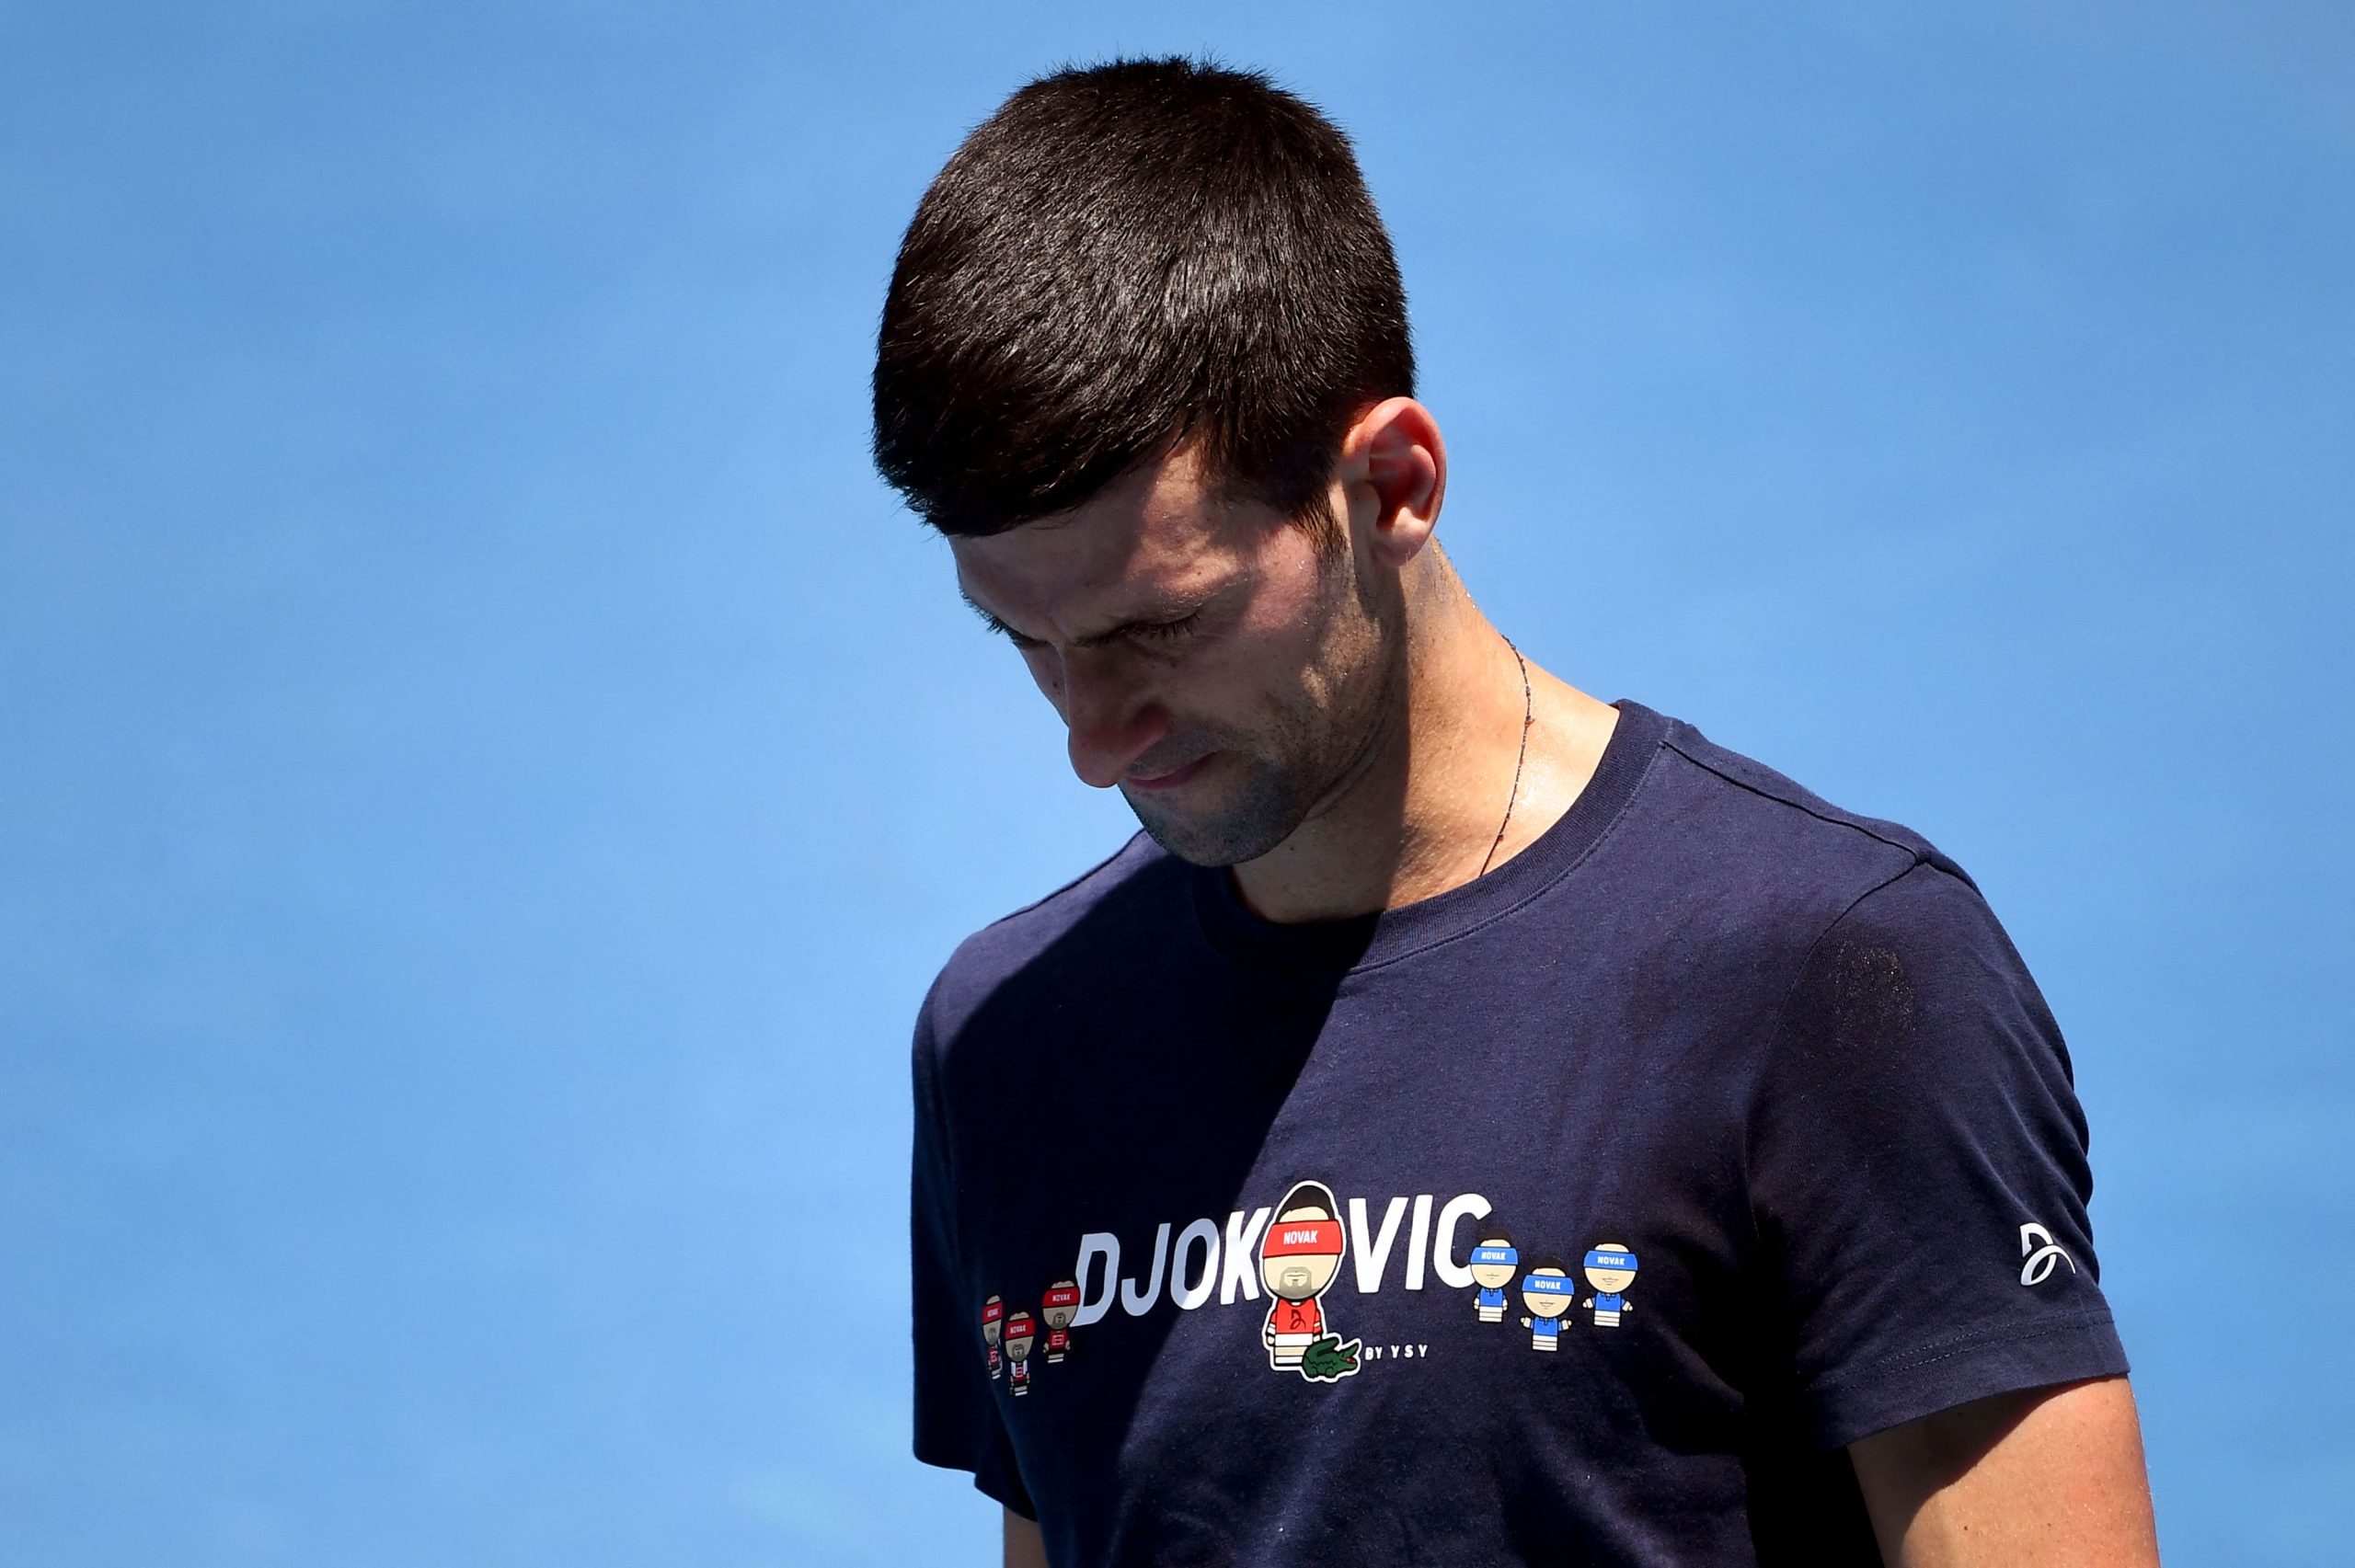 Presença de Djokovic no Roland Garros só com vacina, alertam franceses